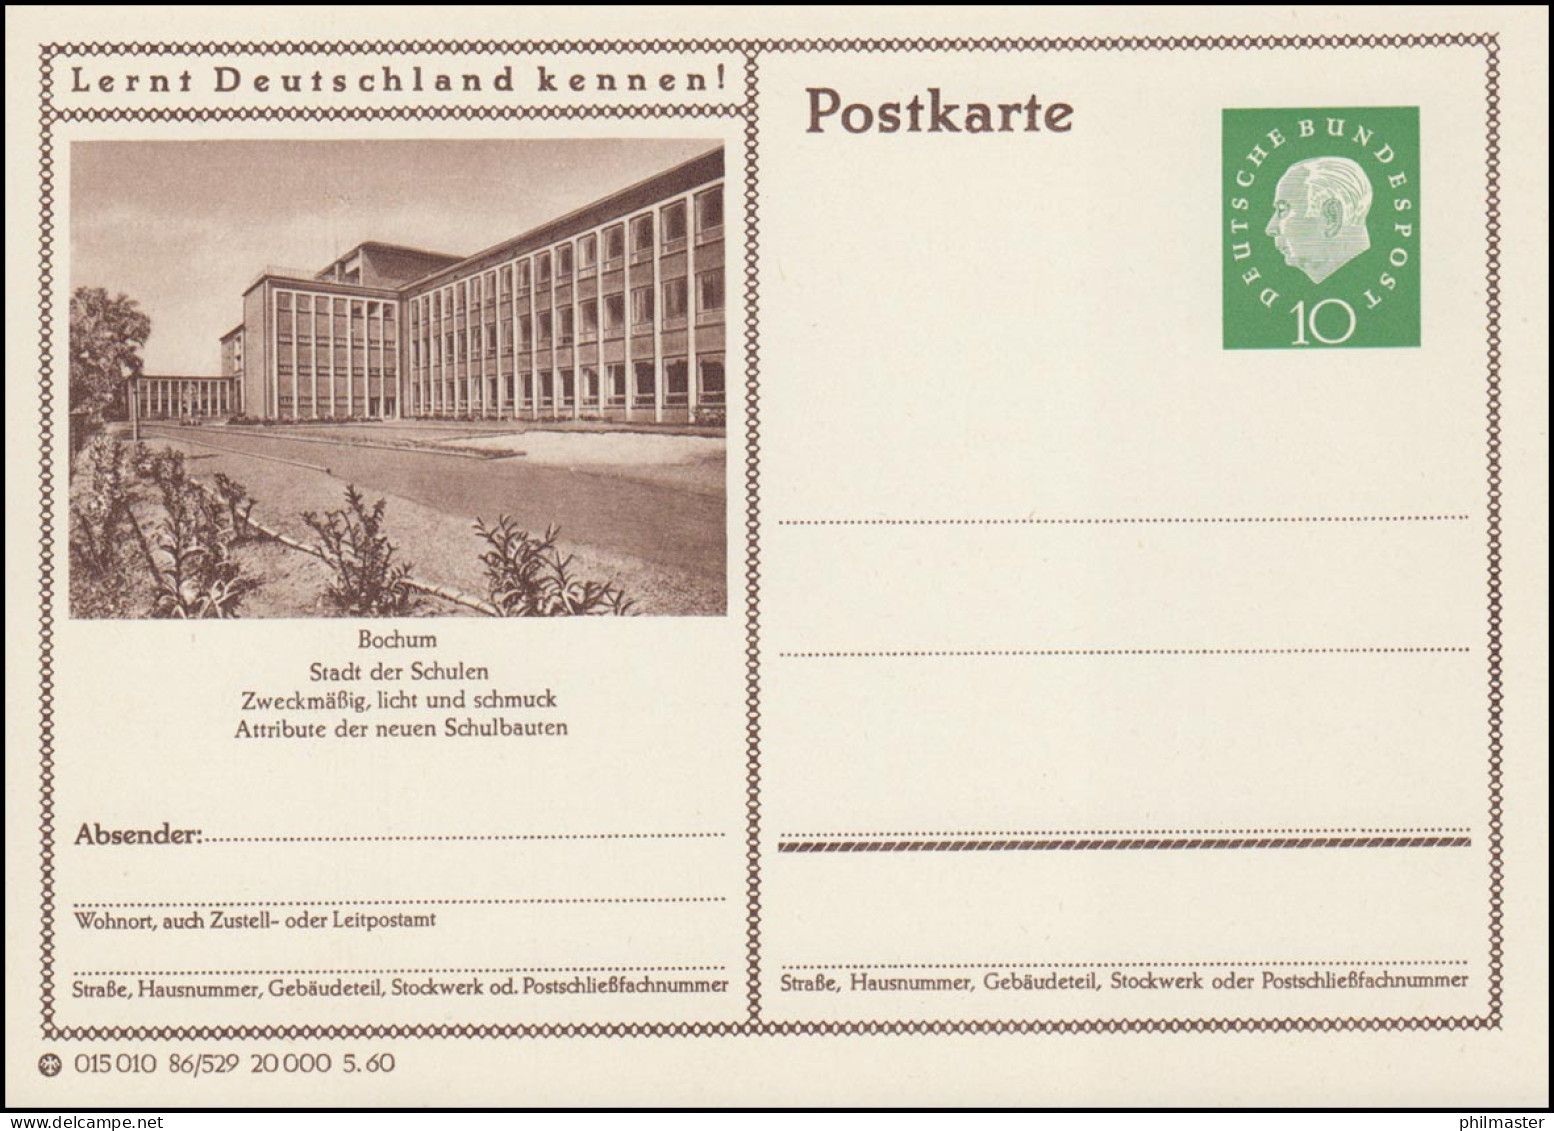 P042-86/529 Bochum, Schule ** - Illustrated Postcards - Mint